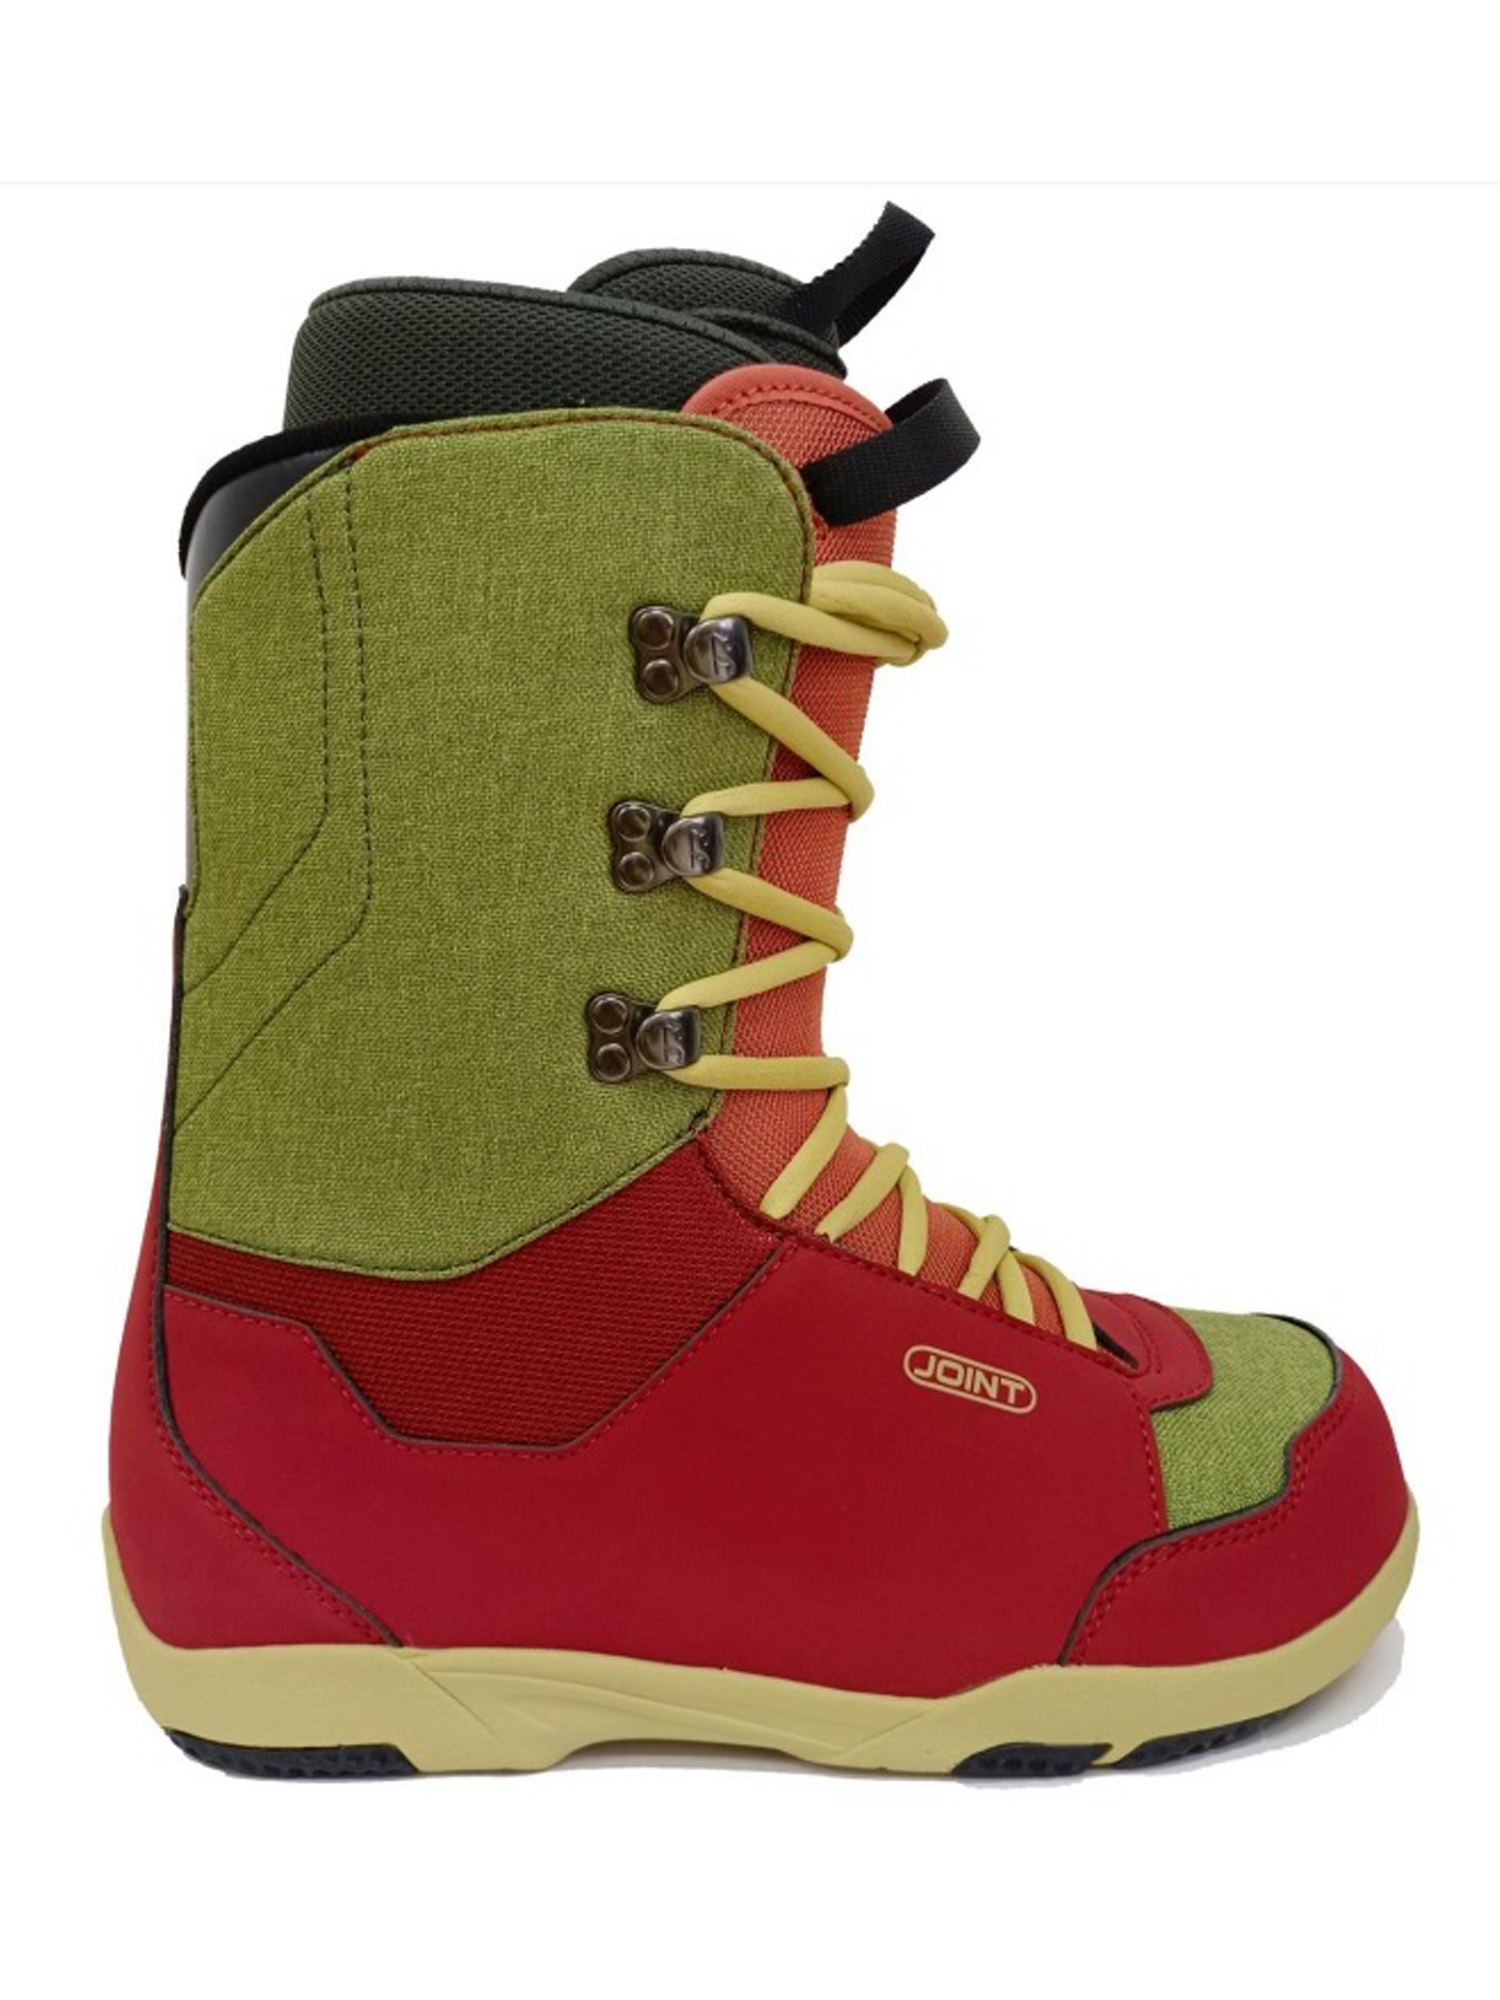 Ботинки для сноуборда Joint  Dovetail 2023 dark red/light brown 28 см